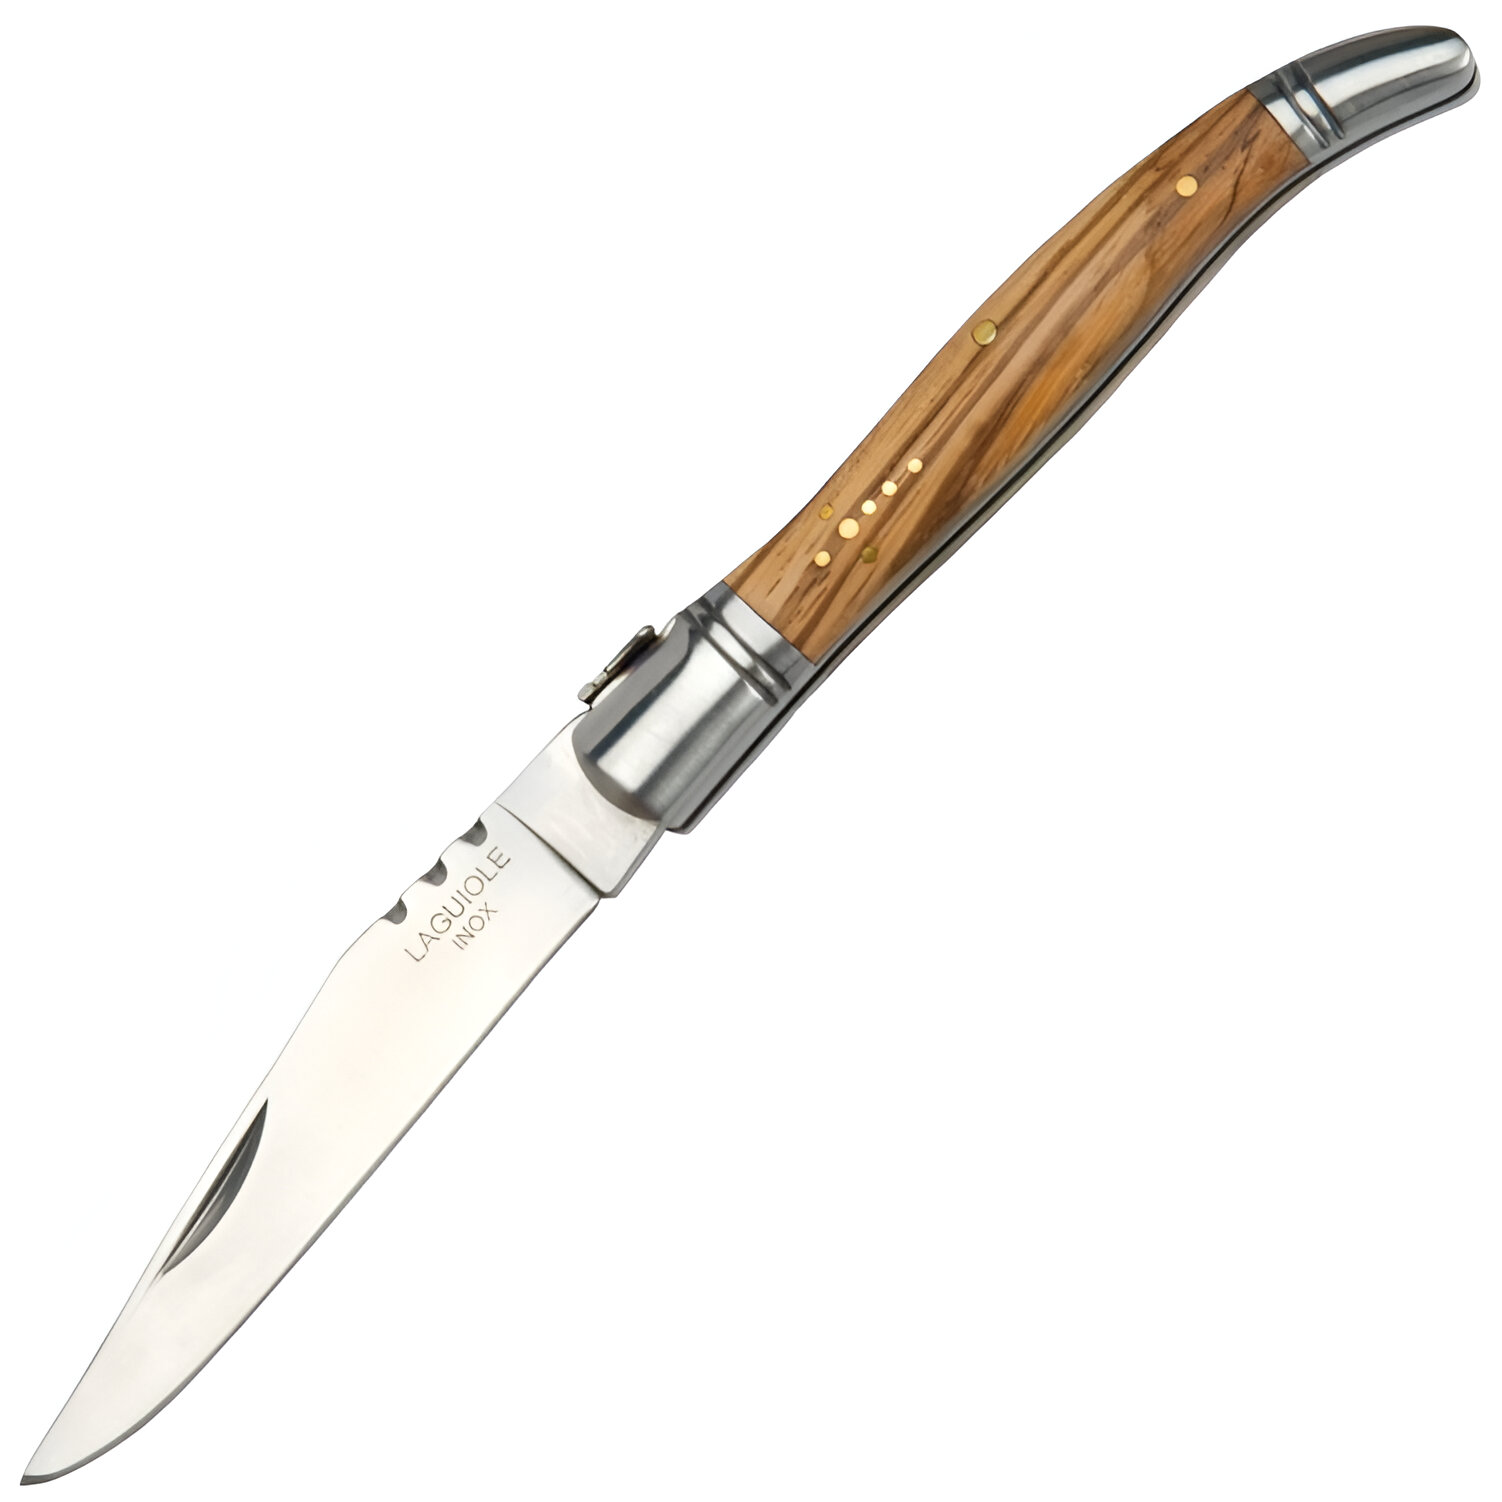 JKR Tradiční španělský zavírací nůž s čepelí 10 cm a střenkami z olivového dřeva